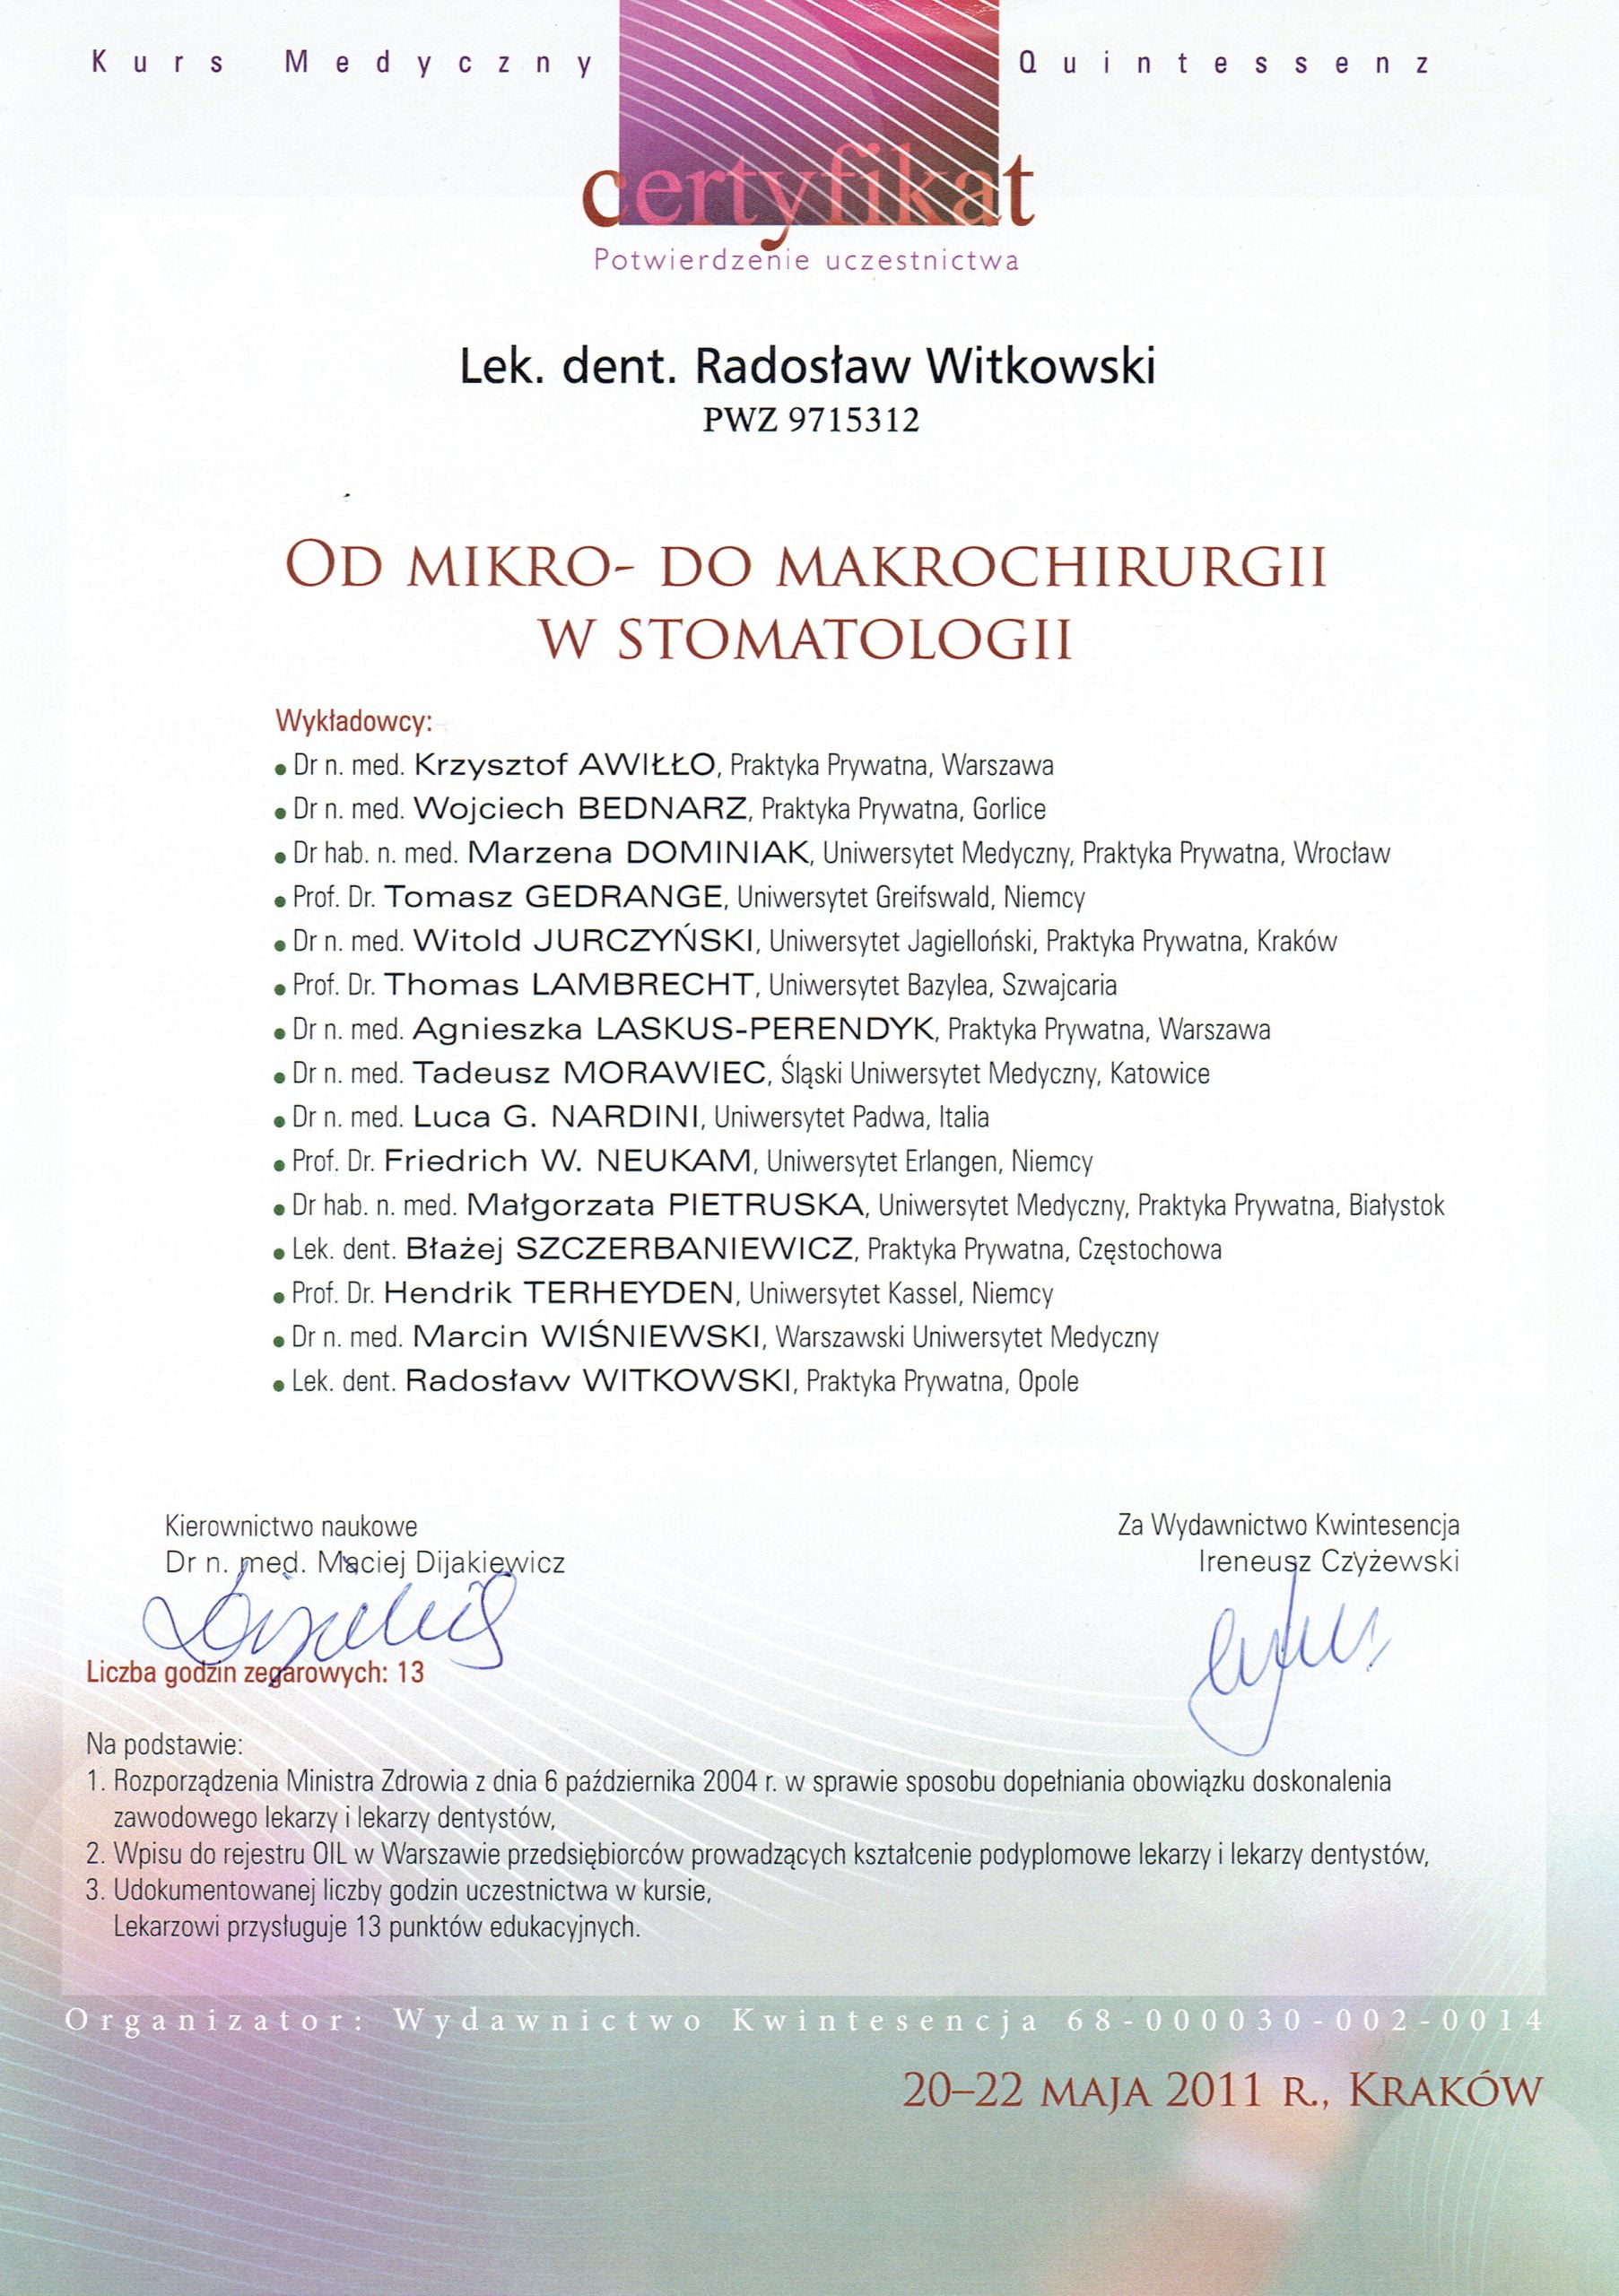 Radosław Witkowski certyfikat 87